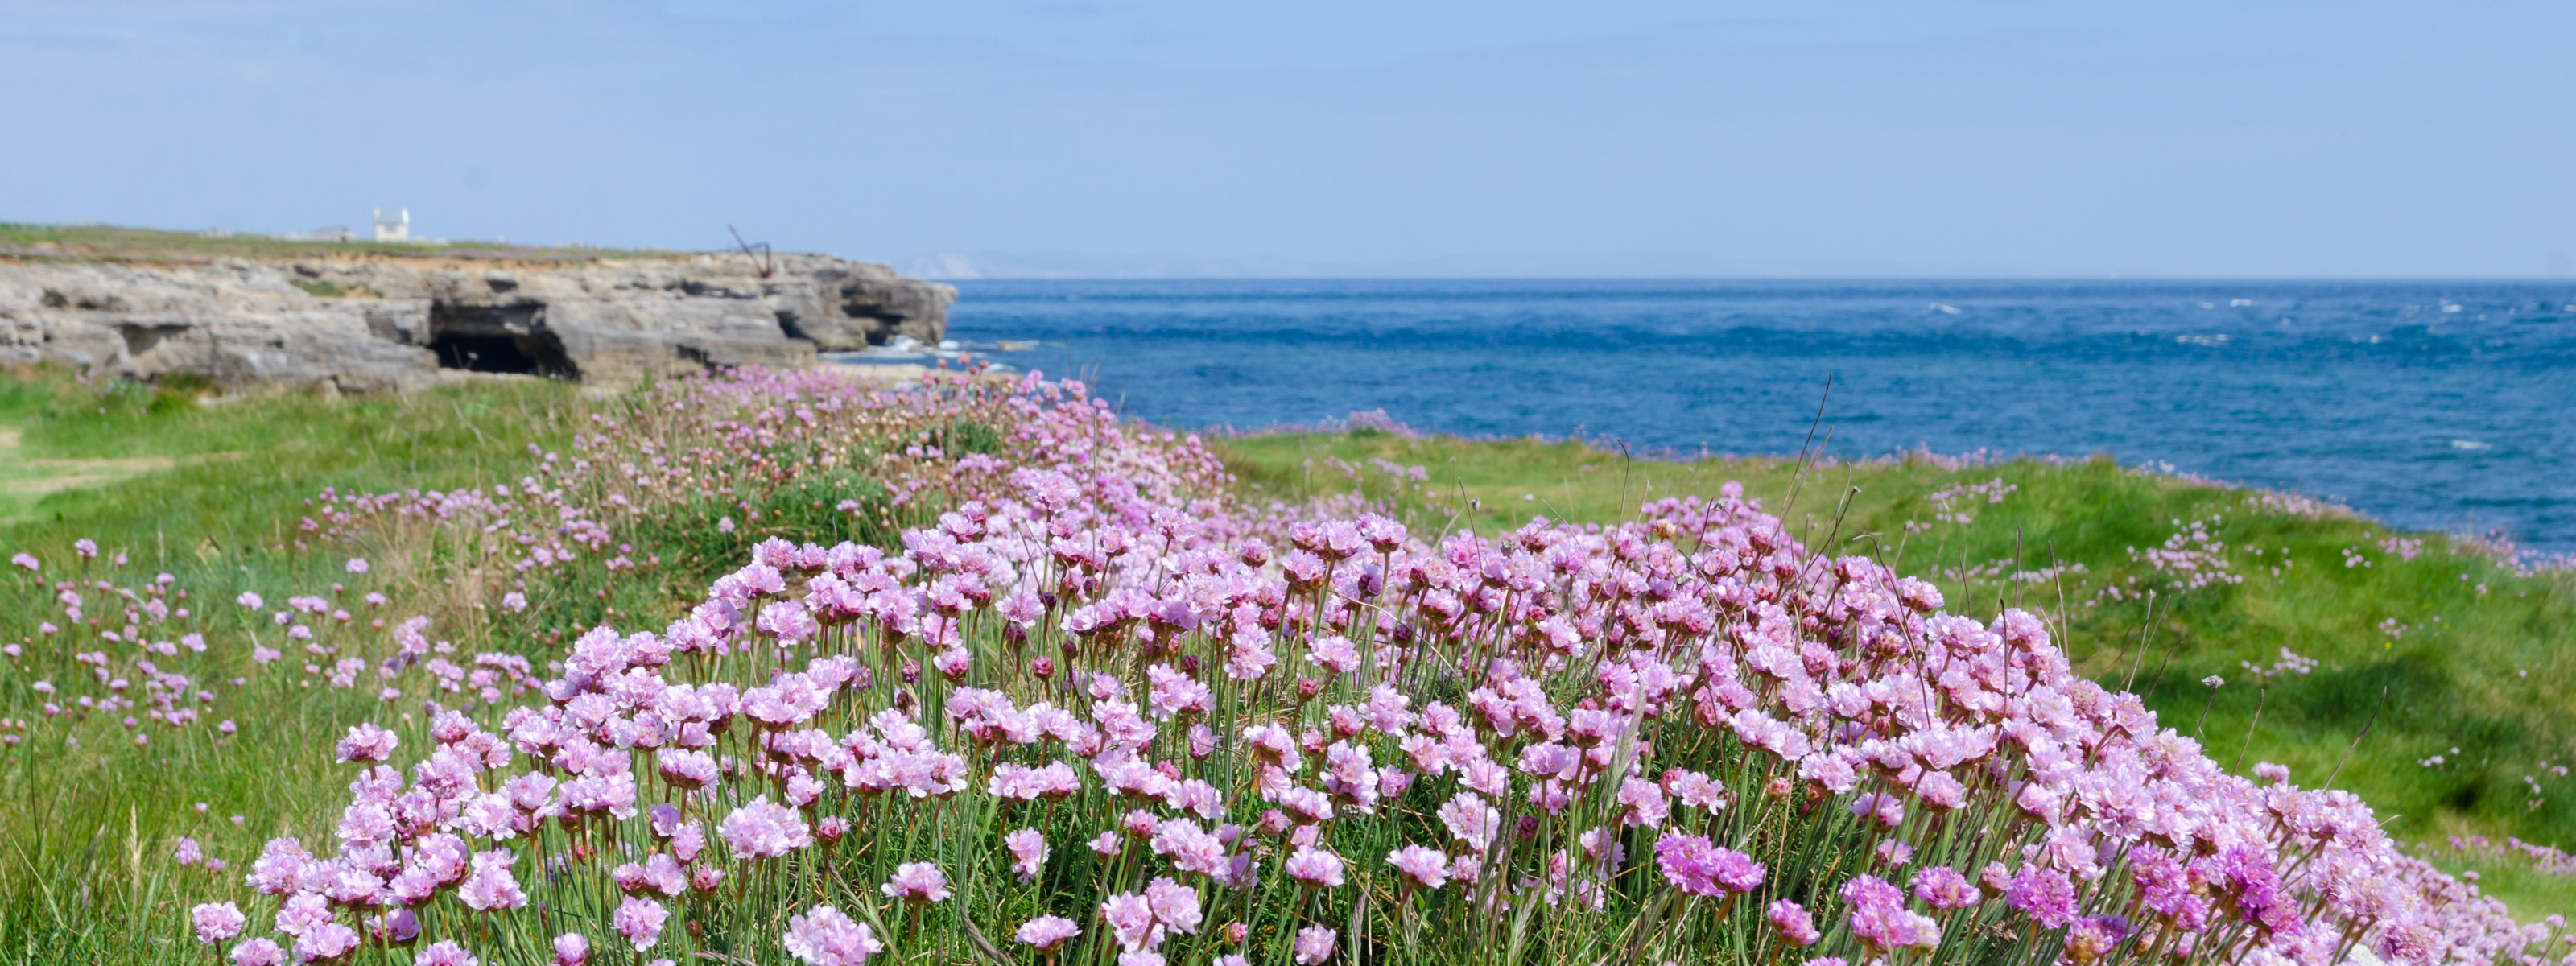 Цветы на береговой ростов. Цветы и море. Берег в цветах. Природа цветы море Анапы. Нежные цветы и море.